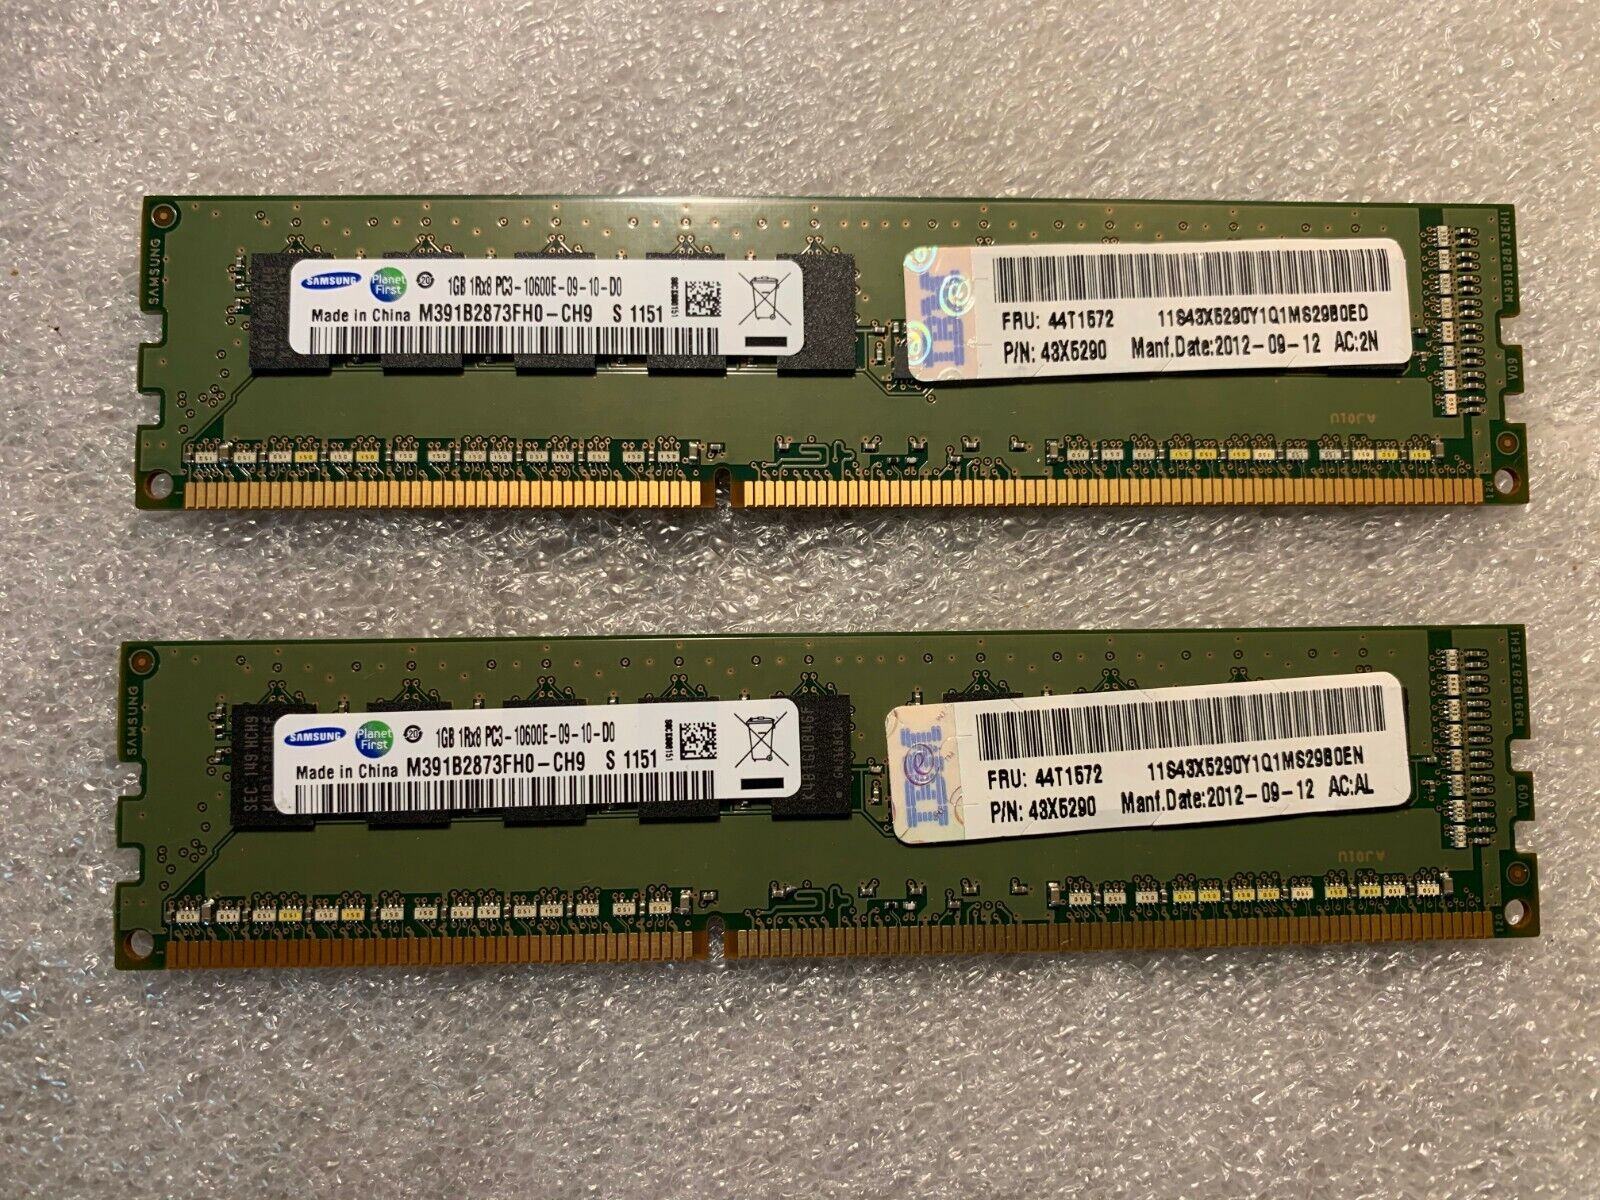  NEW IBM SAMSUNG 2GB-DDR3-1333MHz-PC3-10600E (Kit of 2x1GB)  44T1572  43X5290